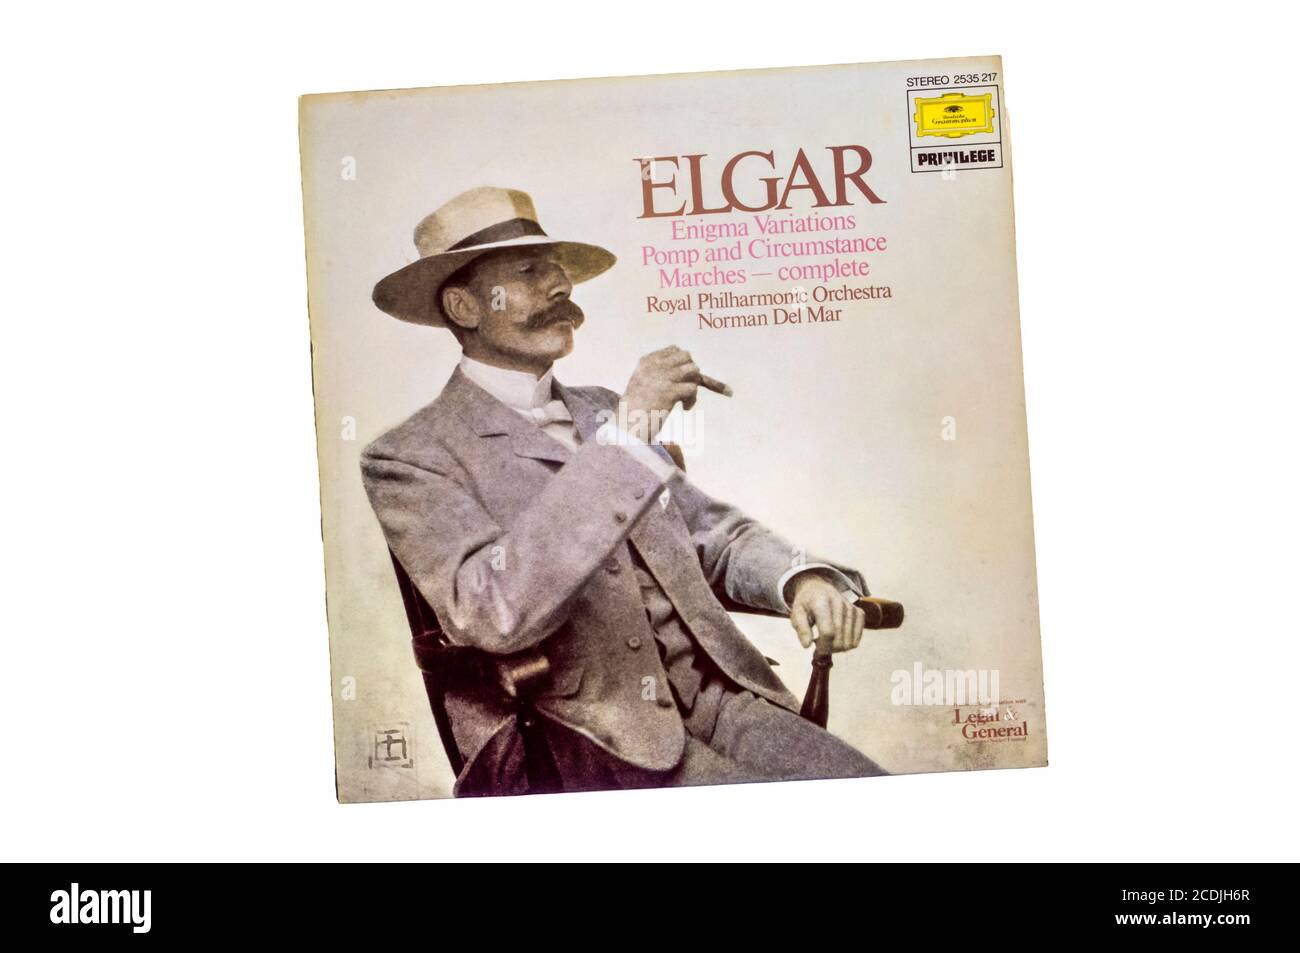 Deutsche Grammophon registra le variazioni Enigma di Elgar e le marches delle circostanze dalla Royal Philharmonic Orchestra. Rilasciato nel 1976. Foto Stock